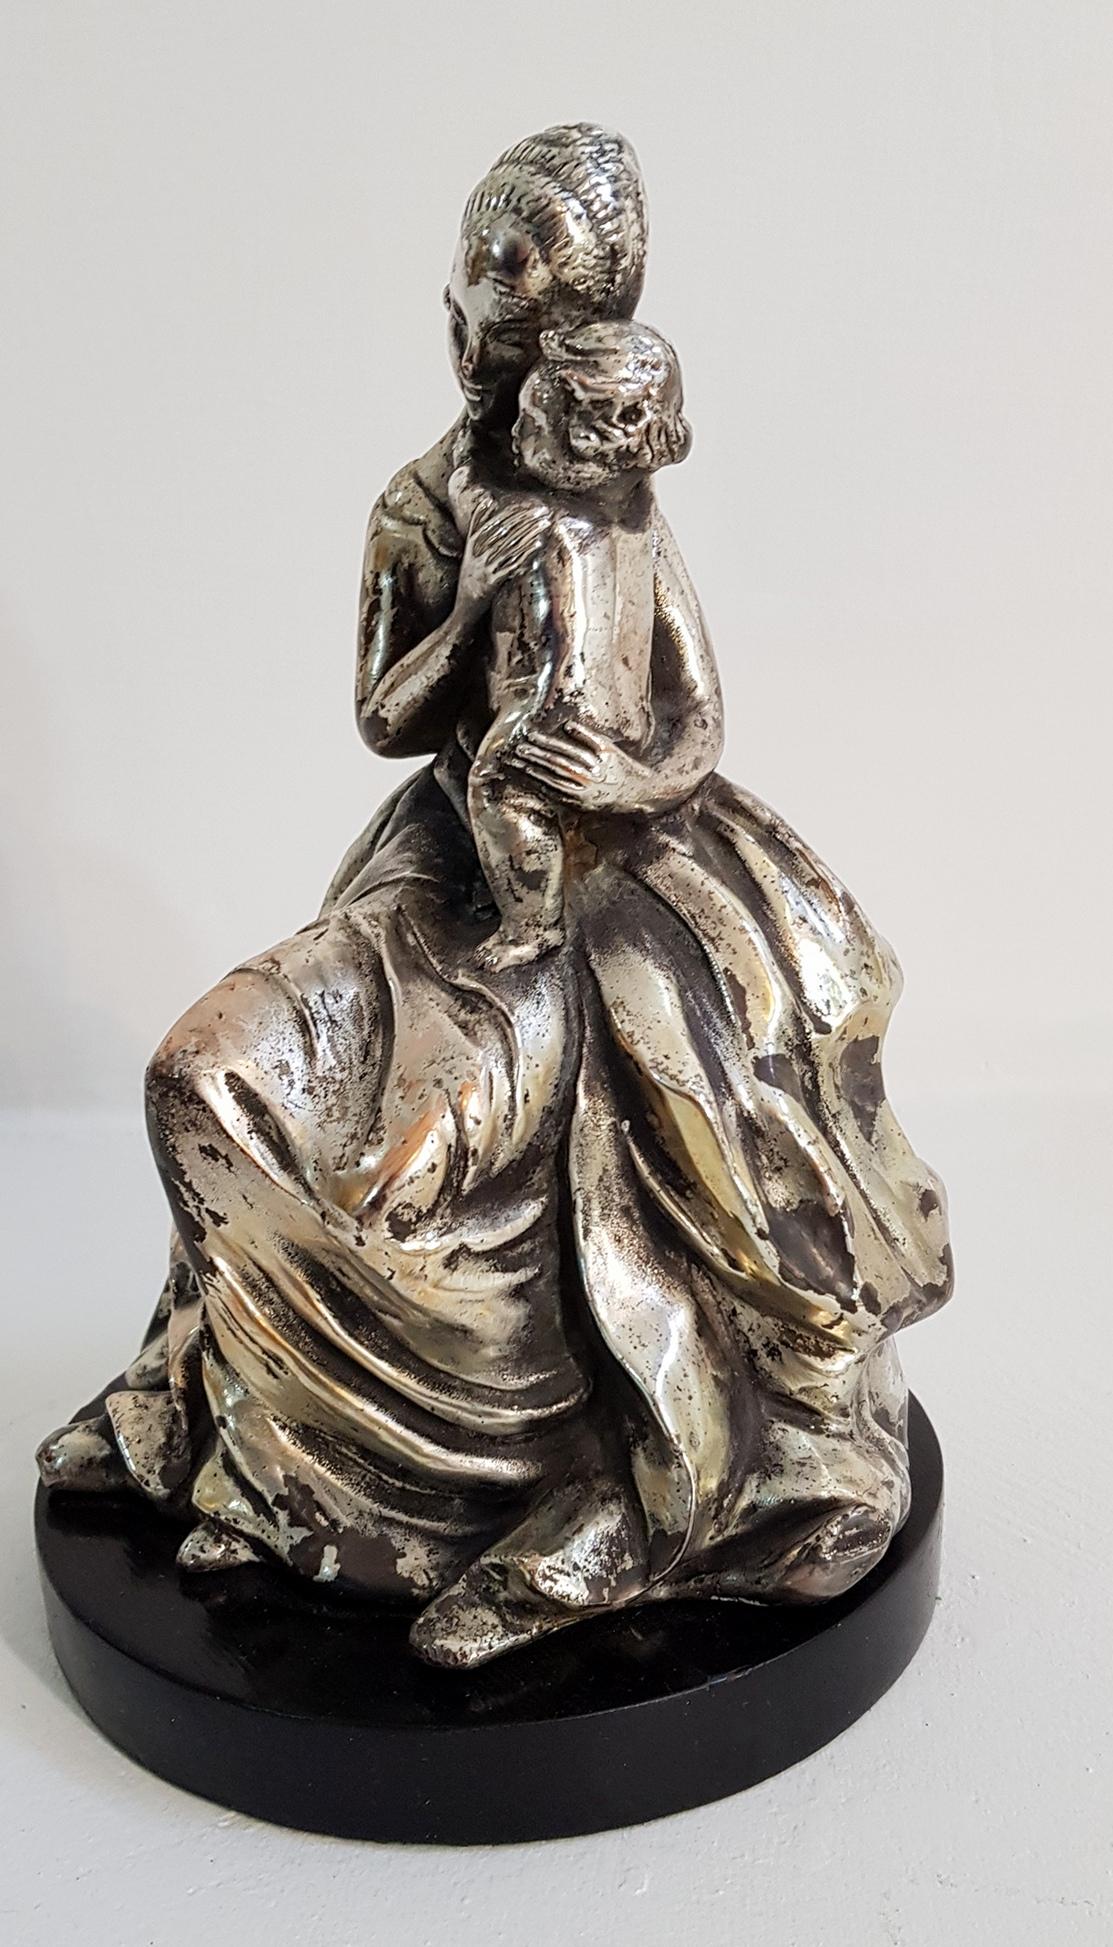 Figurine représentant une mère et un enfant par Guido Cacciapuoti. La figurine repose sur un socle en bois noir et la figurine est fabriquée en terre cuite puis argentée.